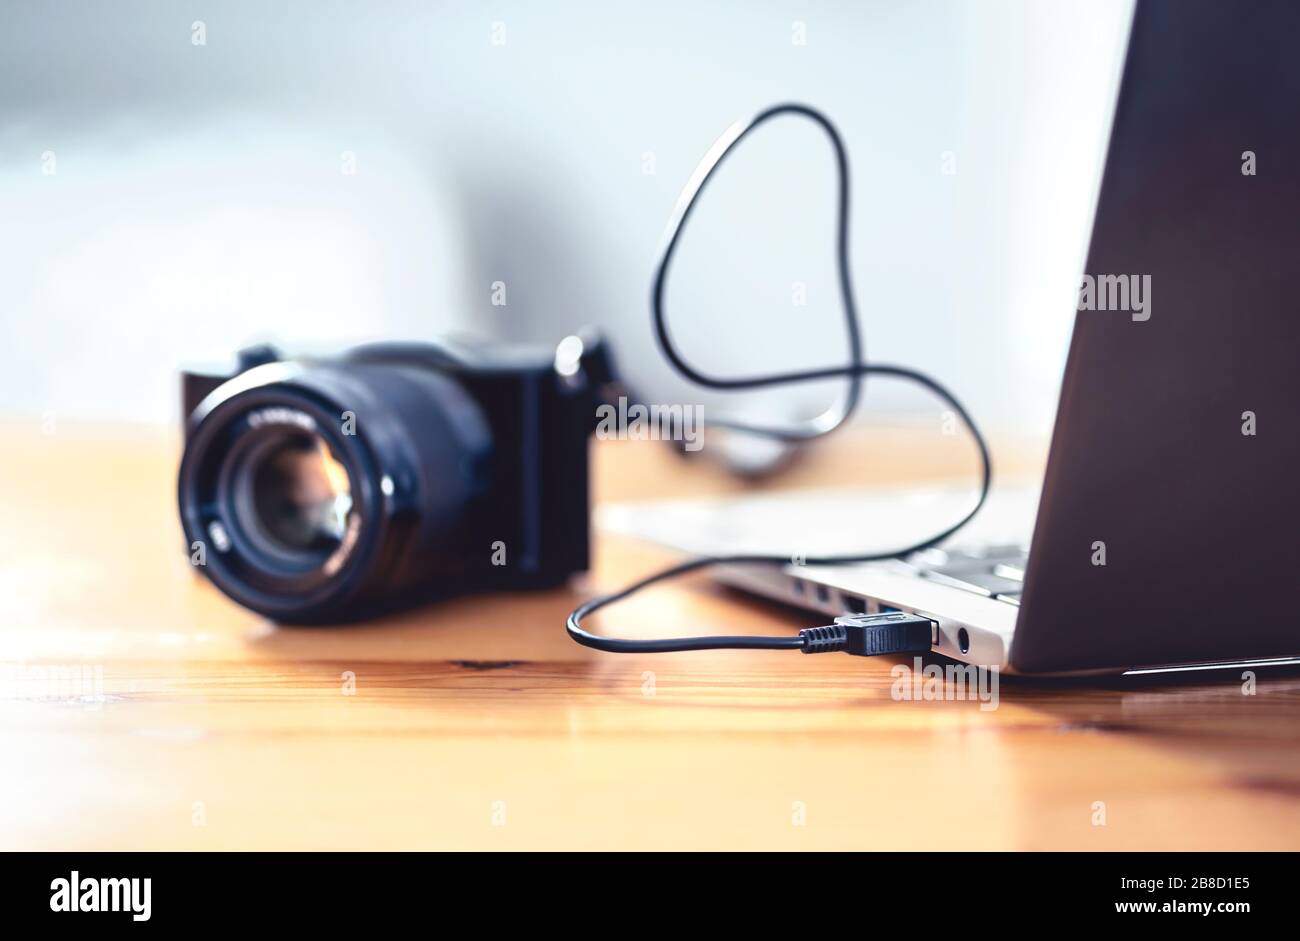 Kamera mit usb-Kabel an Laptop angeschlossen. Dateiübertragung von DSLR auf den Computer. Sichern Sie die Speicherung für Fotos. Stockfoto